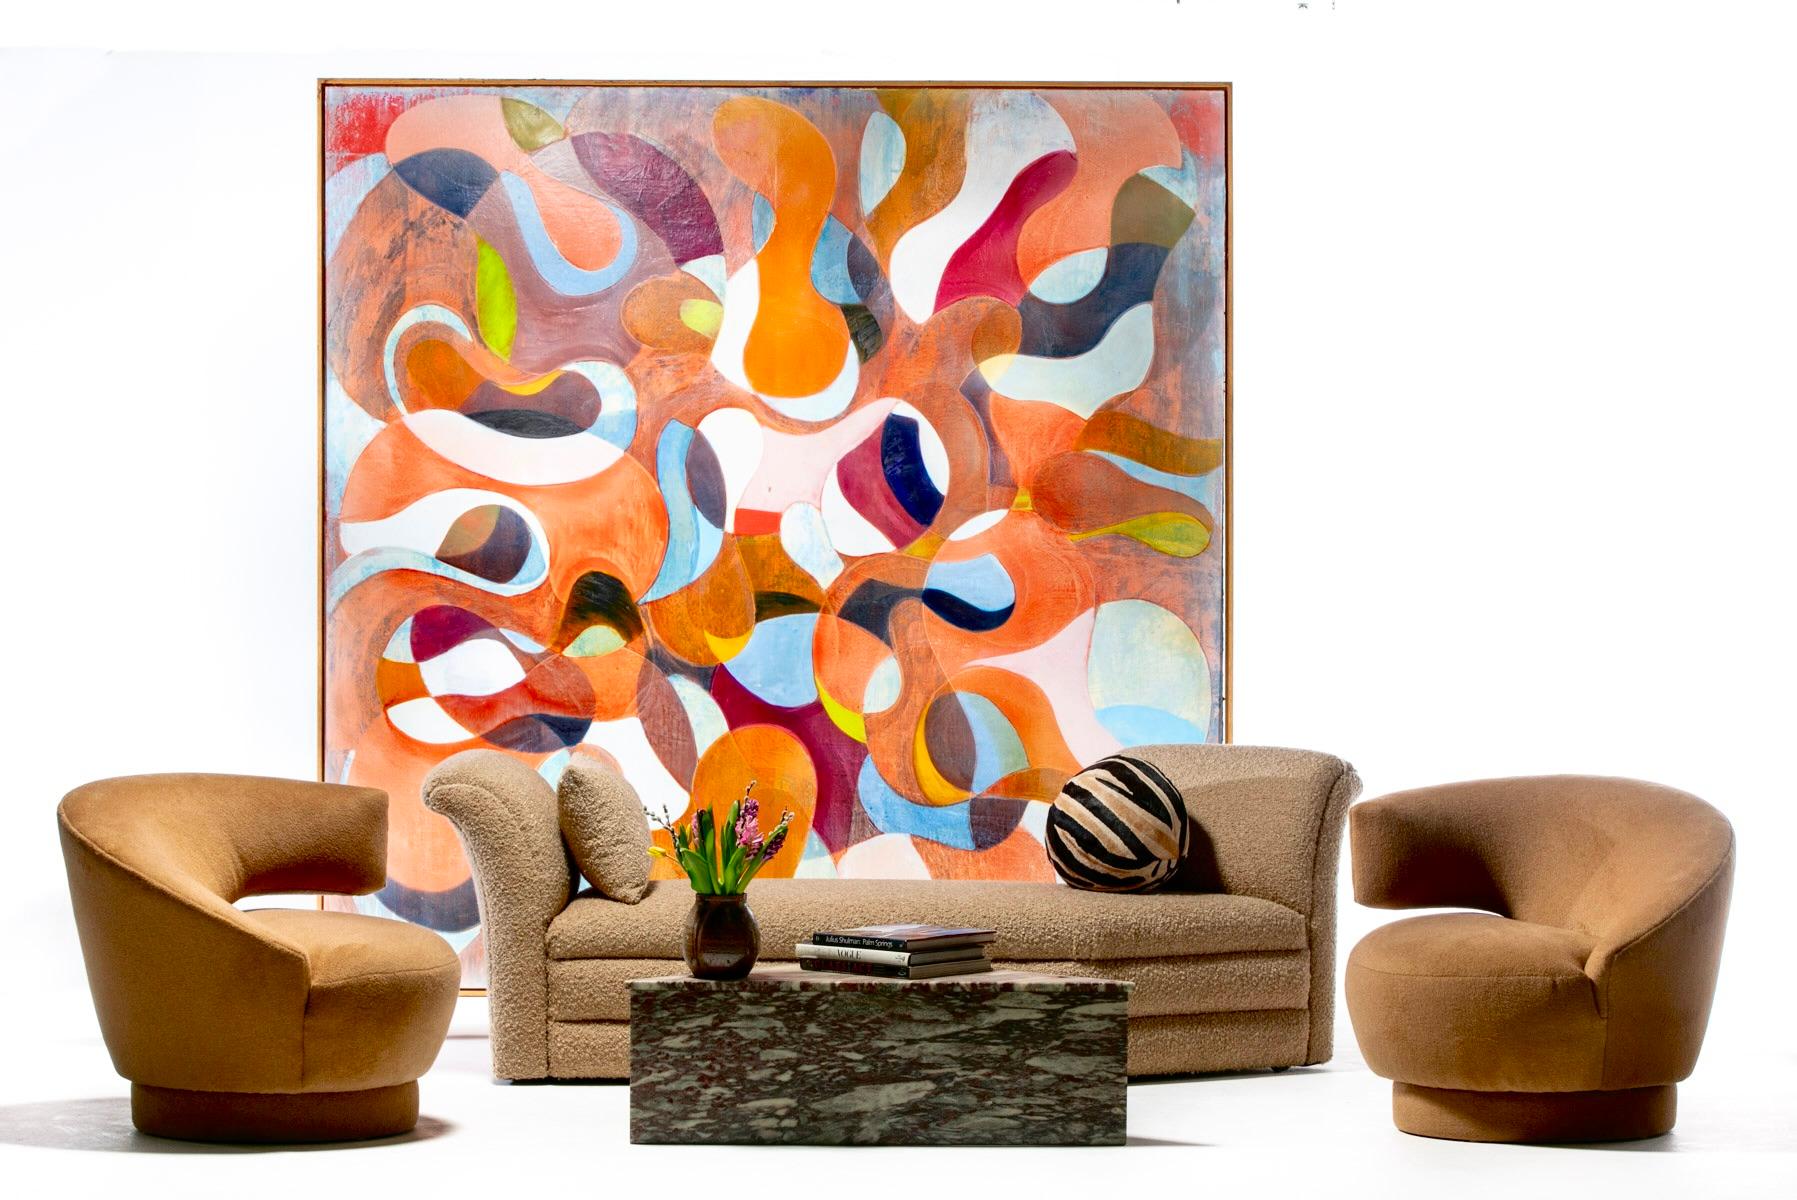 Ce canapé anguleux d'Adrian Pearsall est une pièce d'exception qui dégage une impression de grand art moderne et de glamour haut de gamme. C'est le genre de pièce que l'on pose dans une pièce et qui donne immédiatement une impression de WOW - un